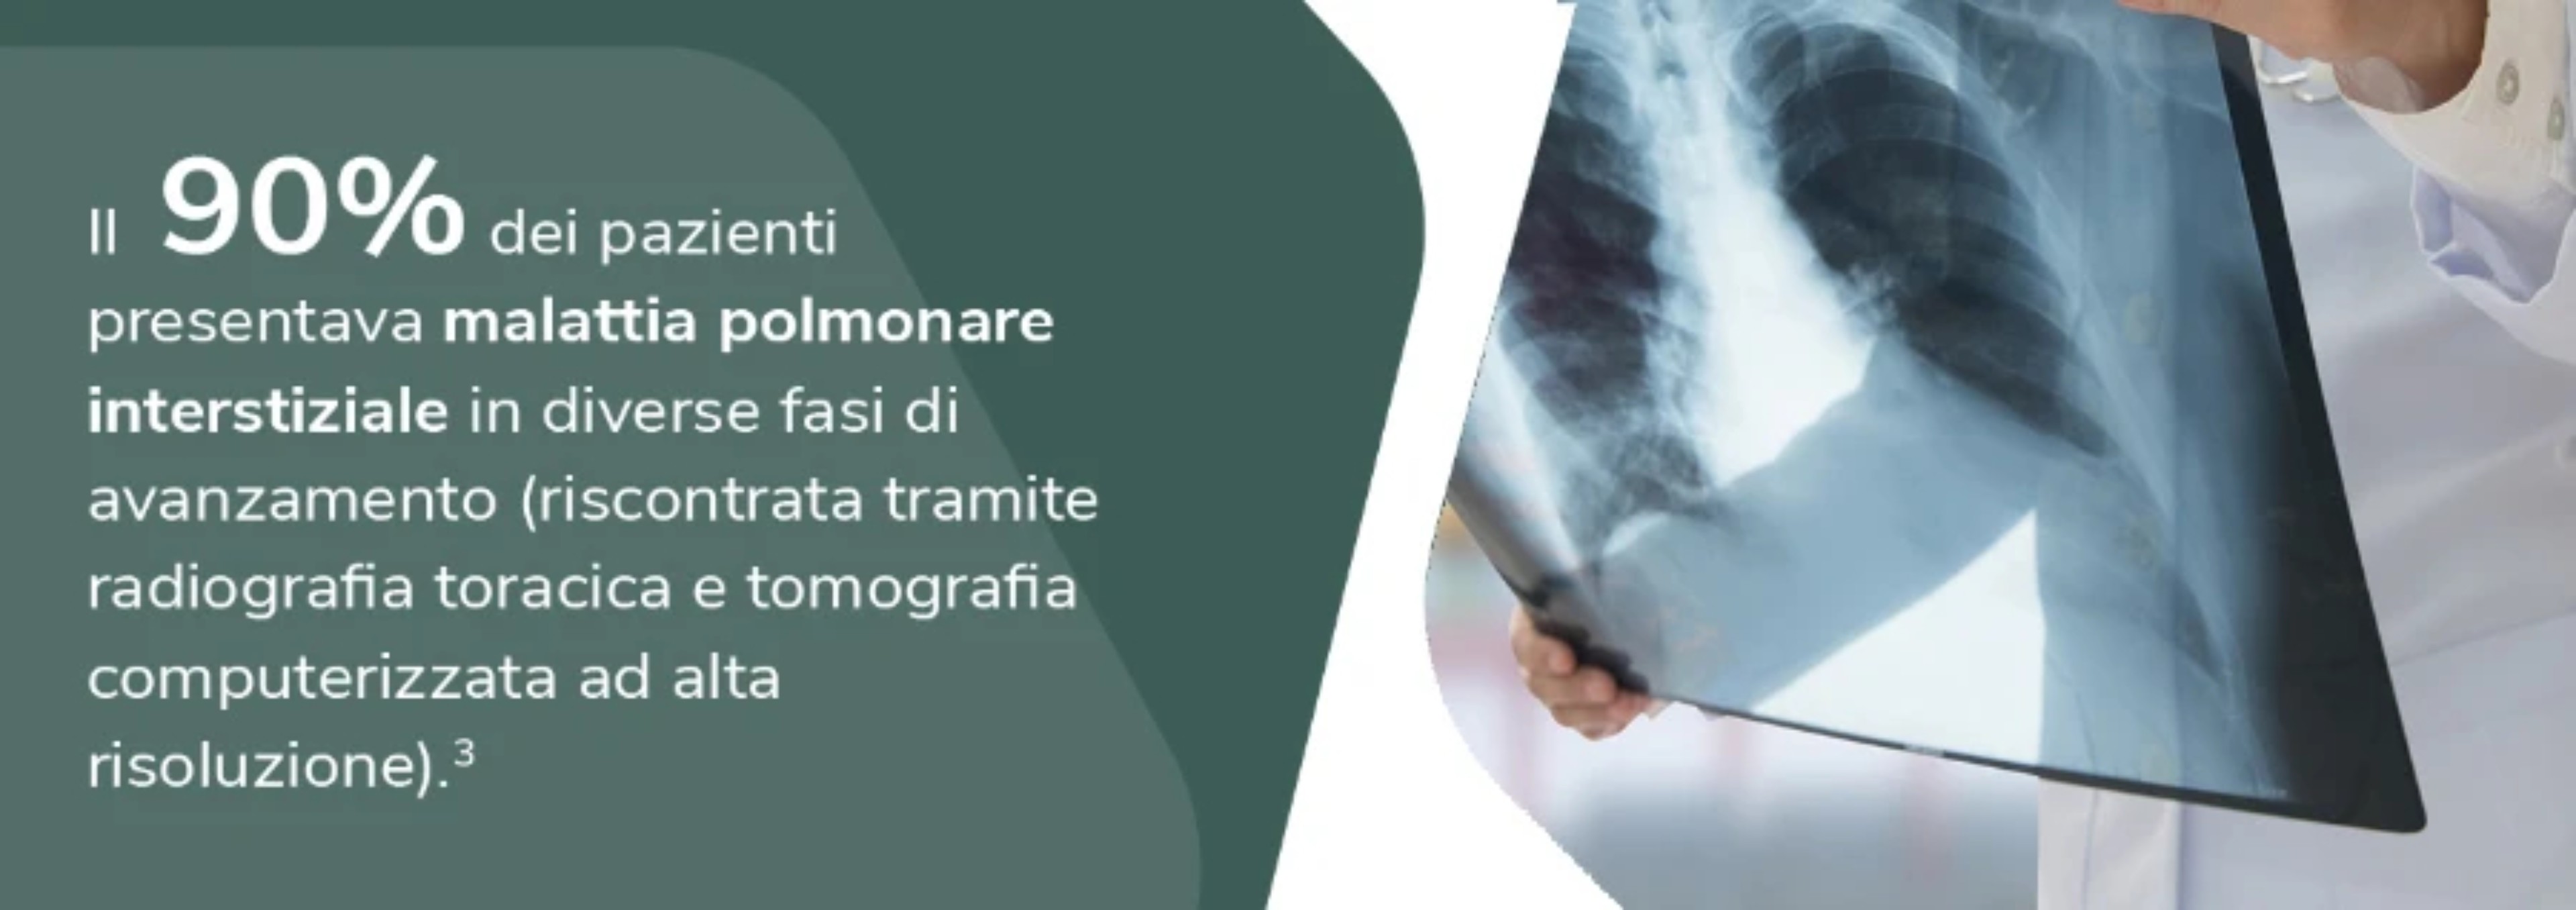 coinvolgimento-polmonare-1